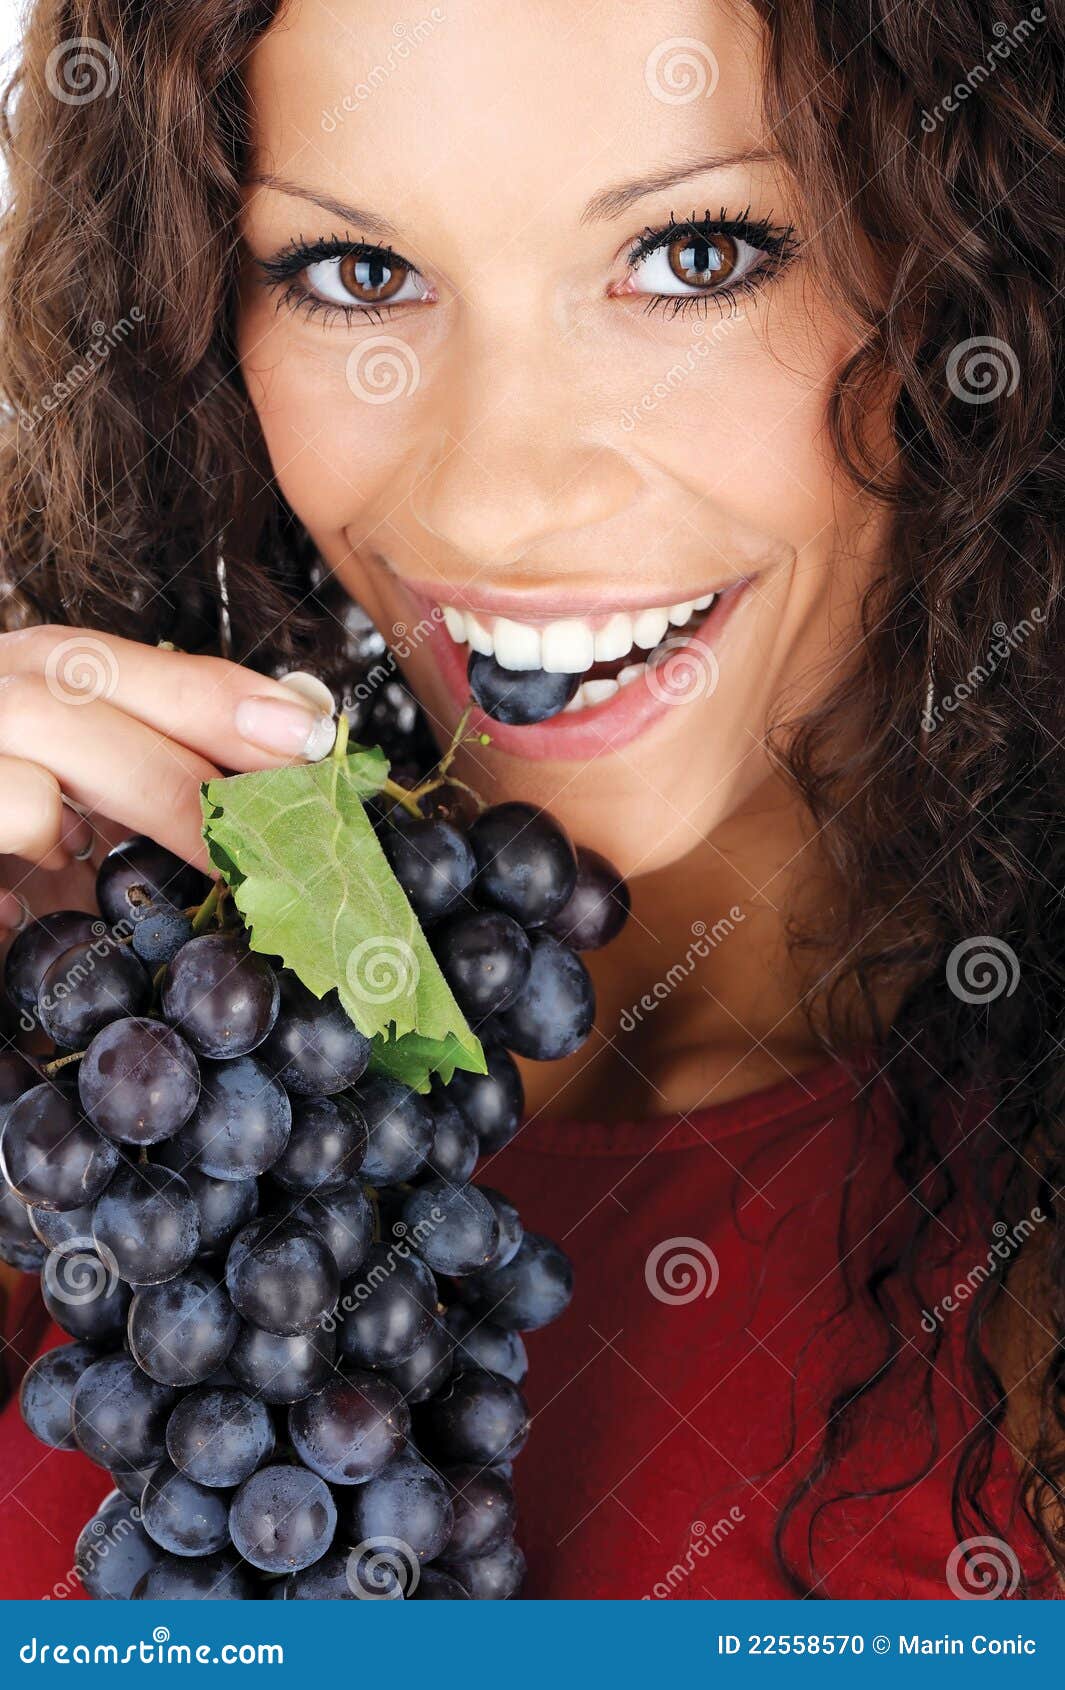 Девушка есть виноград. Красивая девушка с виноградом. Девушка с черным виноградом. Виноград брюнетка. Фотосессия с виноградом.